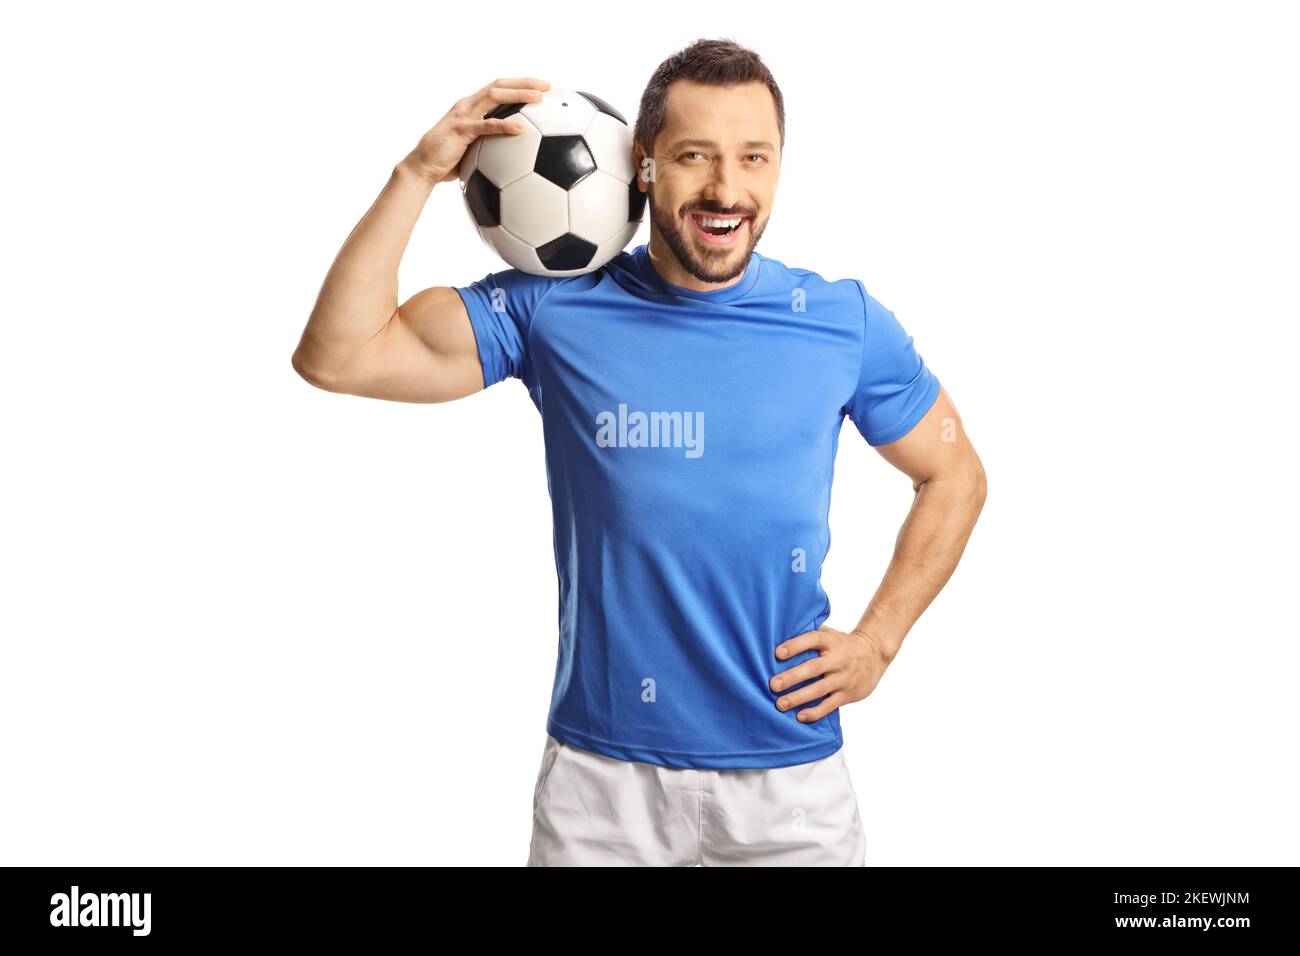 Fotball giocatore che tiene una palla sulla sua spalla isolato su sfondo bianco Foto Stock